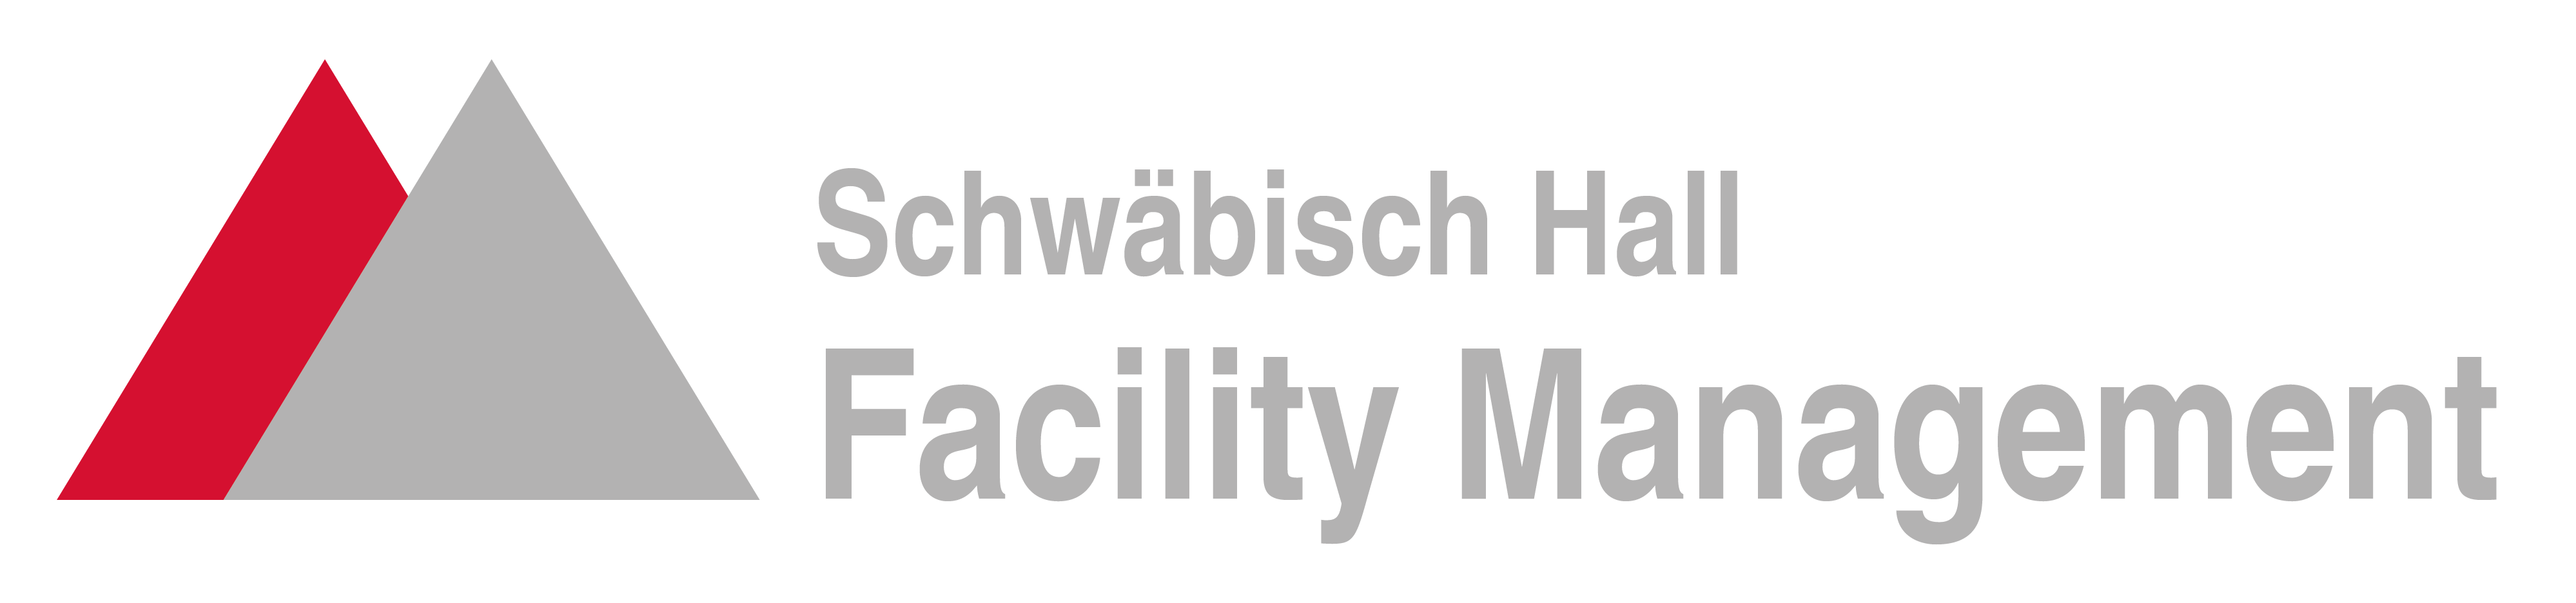 Schw%c3%a4bisch hall facility management cmyk weisserrahmen